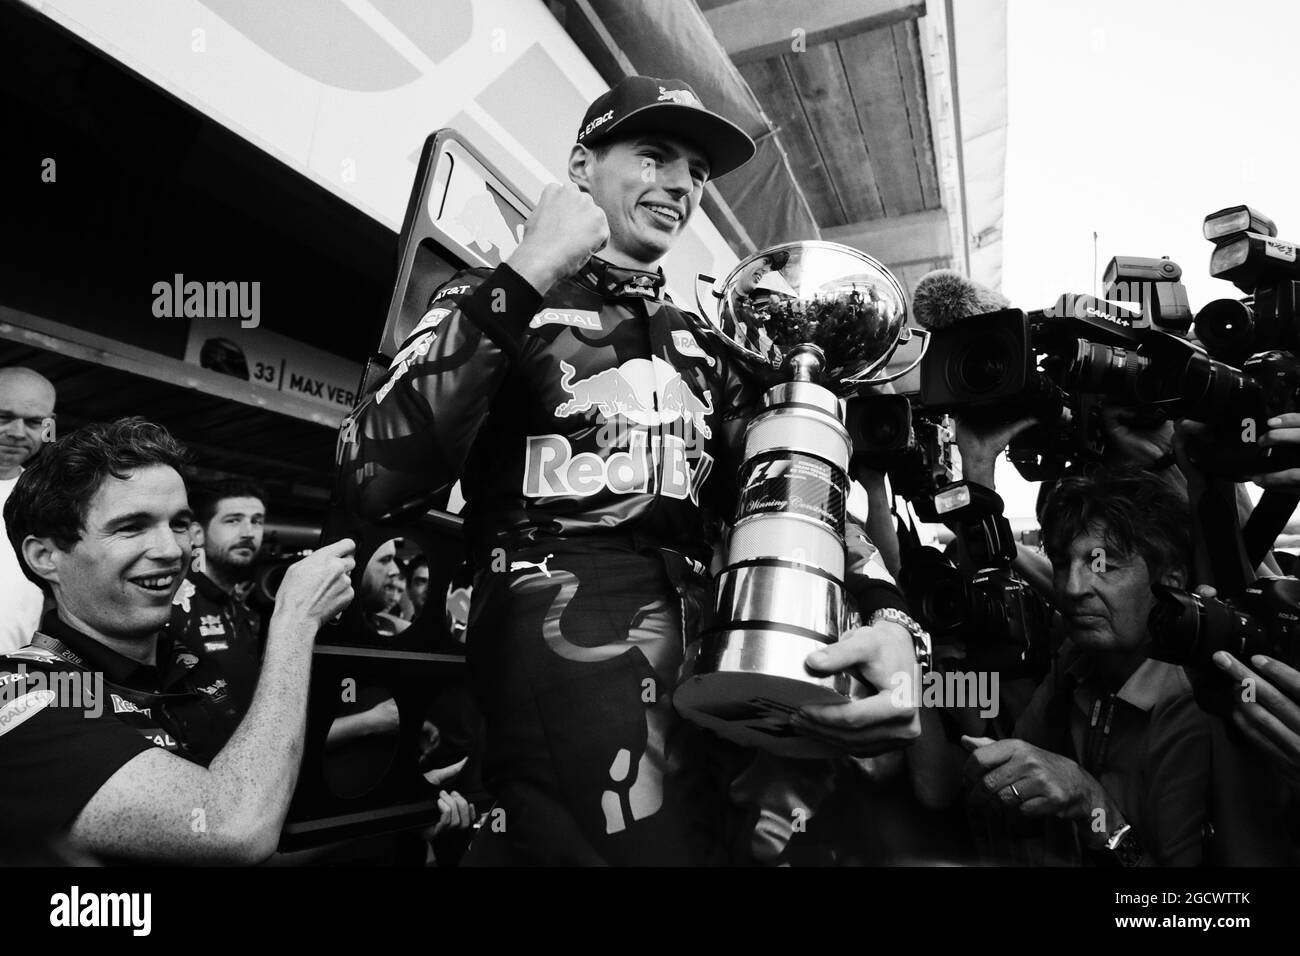 Le vainqueur de la course Max Verstappen (NLD) Red Bull Racing célèbre avec l'écurie. Grand Prix d'Espagne, dimanche 17 mai 2016. Barcelone, Espagne. Banque D'Images